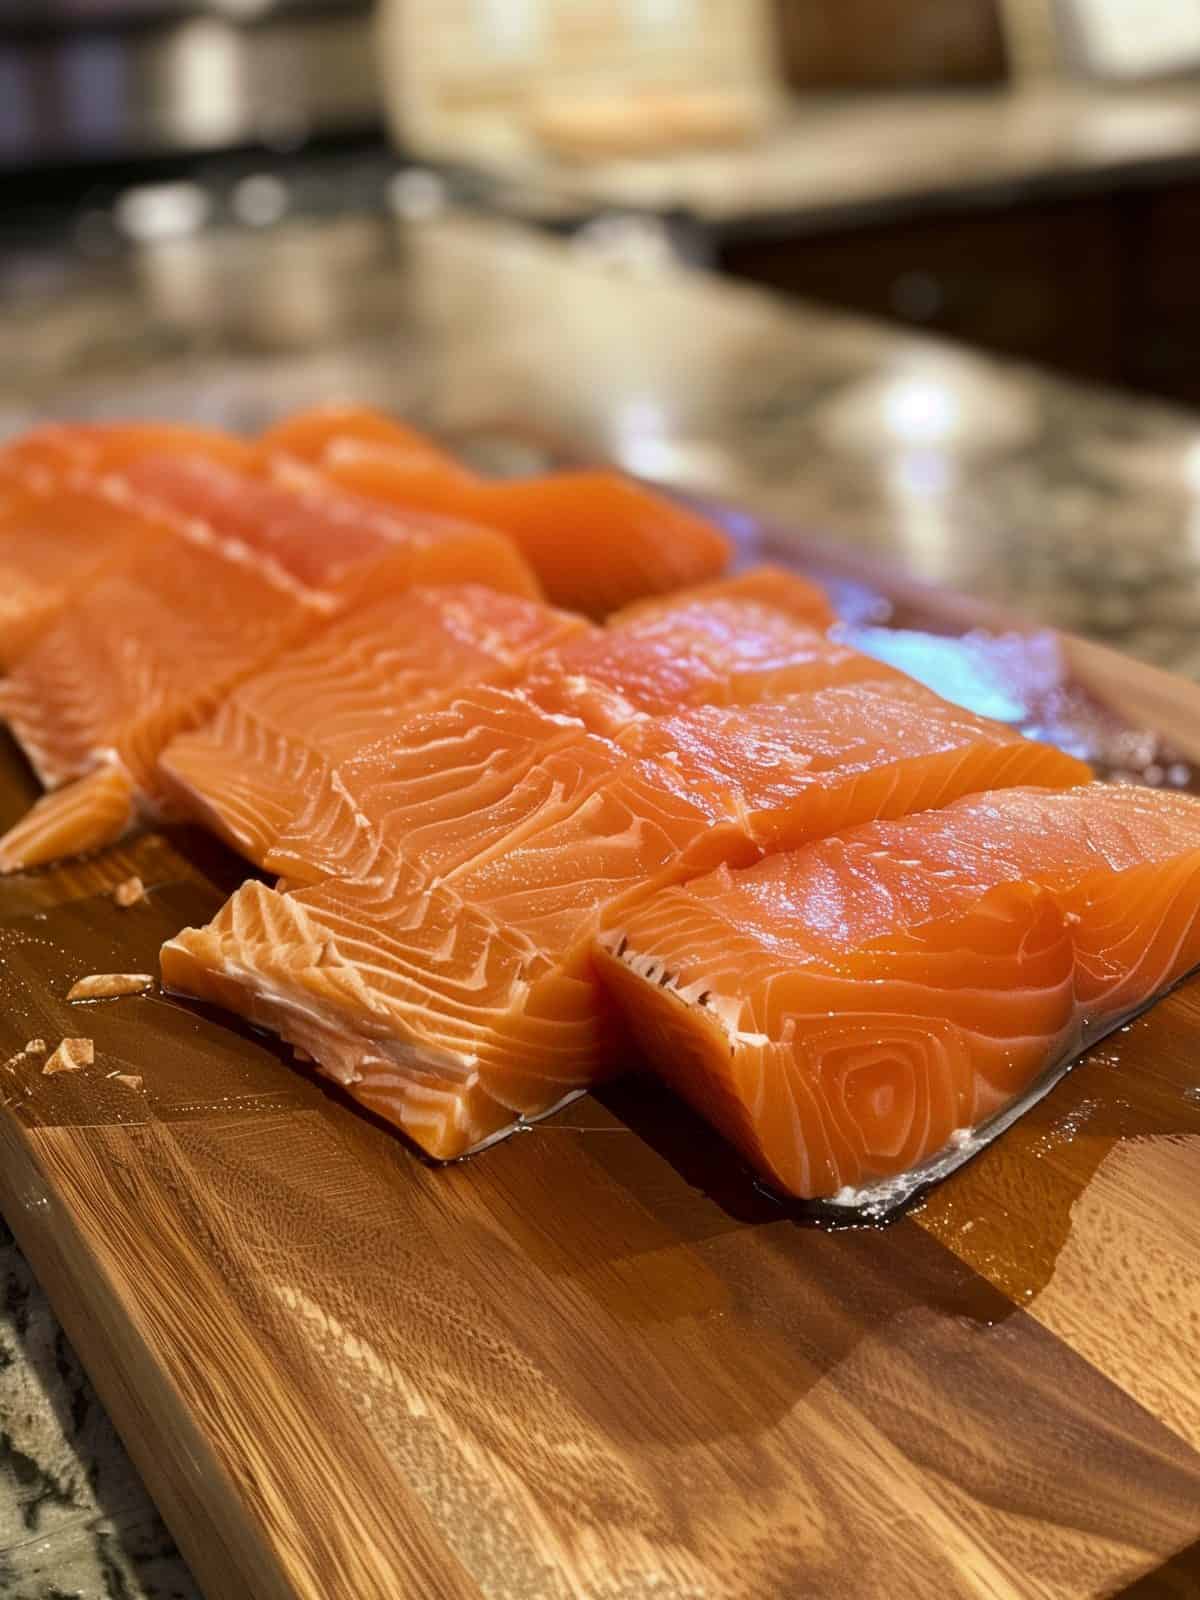 raw salmon on wooden board cut in fillets